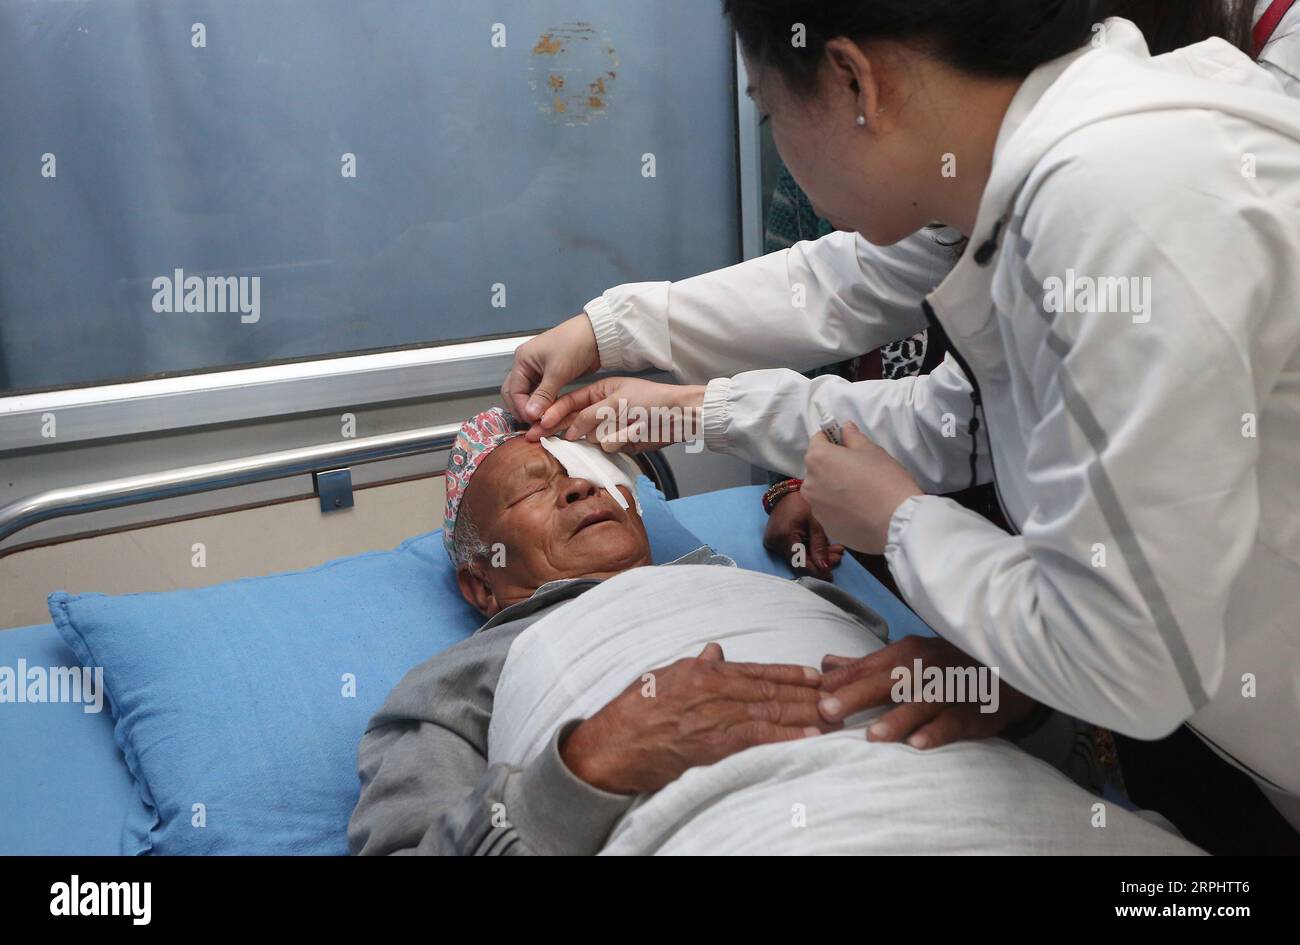 191118 -- KATMANDOU, le 18 novembre 2019 -- Un médecin chinois examine un patient qui a subi une chirurgie de la cataracte à l'hôpital Manmohan Memorial de Katmandou, Népal, le 17 novembre 2019. L’équipe médicale chinoise a fourni gratuitement des chirurgies de la cataracte à plus de 50 patients népalais au cours des deux derniers jours ici dans le cadre des programmes visant à renforcer la coopération médicale entre les deux pays. NÉPAL-KATMANDOU-CHINOIS MÉDECINS-LIBRE CHIRURGIE DE LA CATARACTE SUNILXSHARMA PUBLICATIONXNOTXINXCHN Banque D'Images